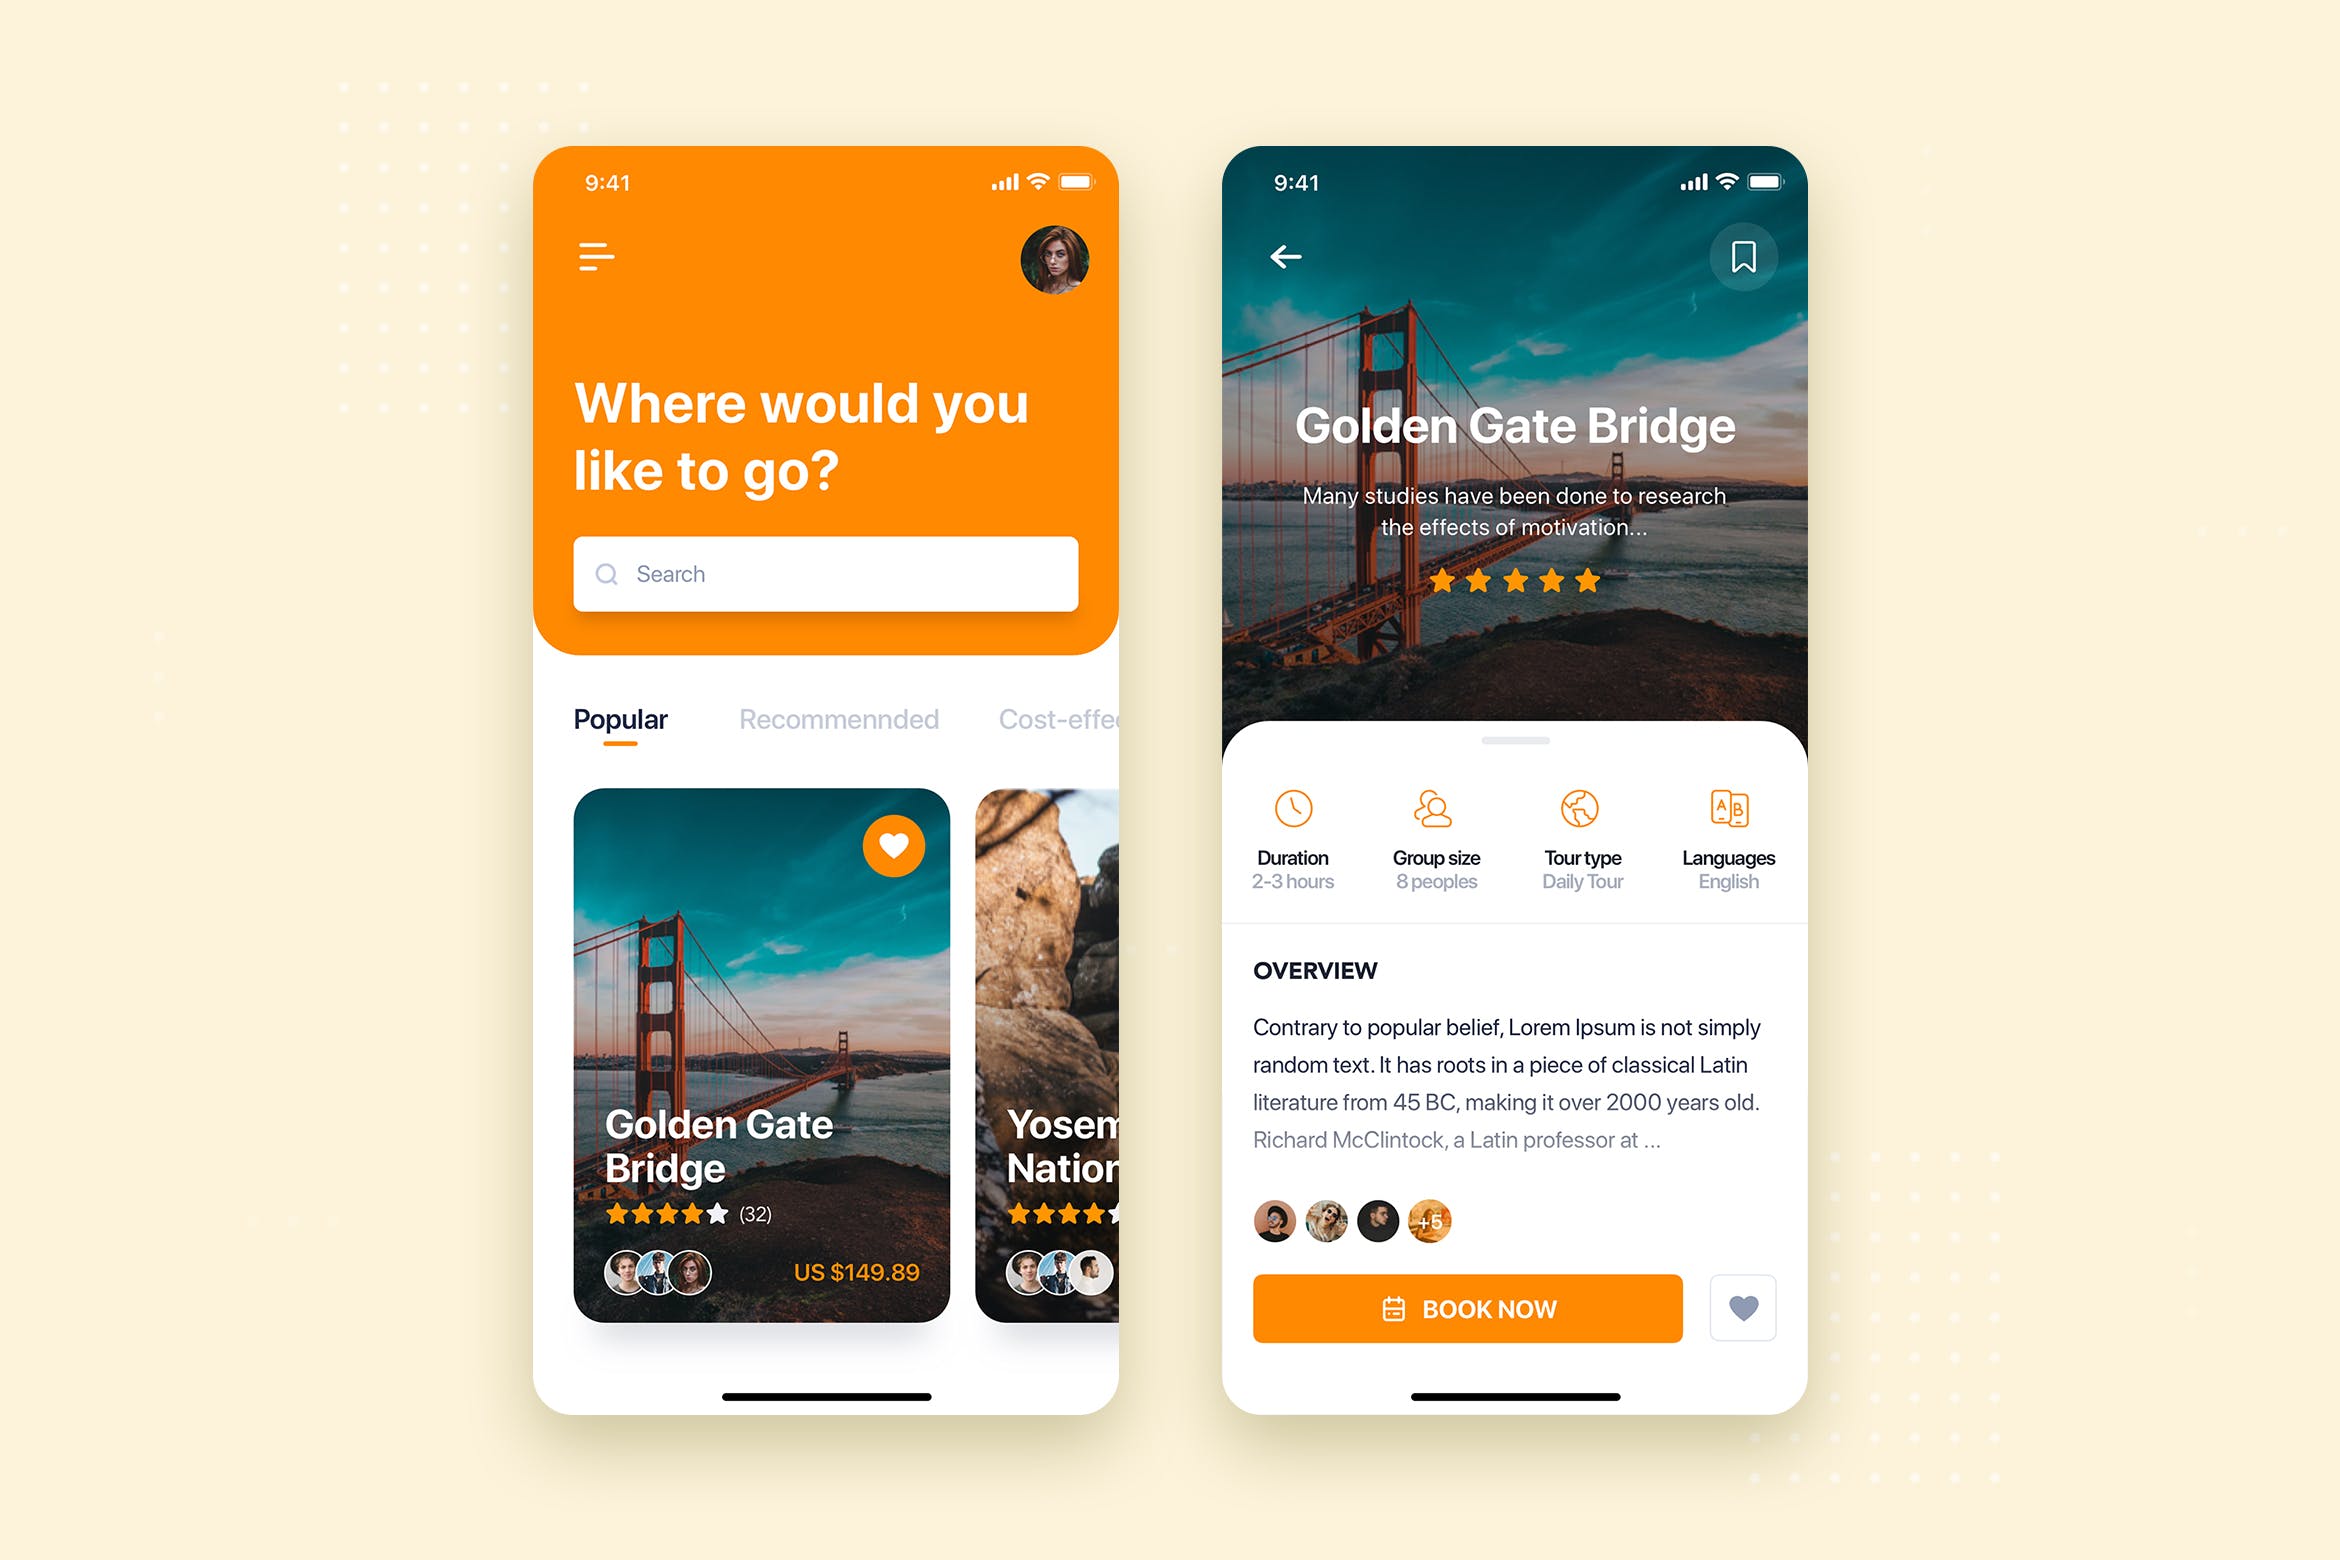 旅游出行预订APP应用首页&预订界面设计第一素材精选模板 Travel Booking Mobile App UI Kit Template插图